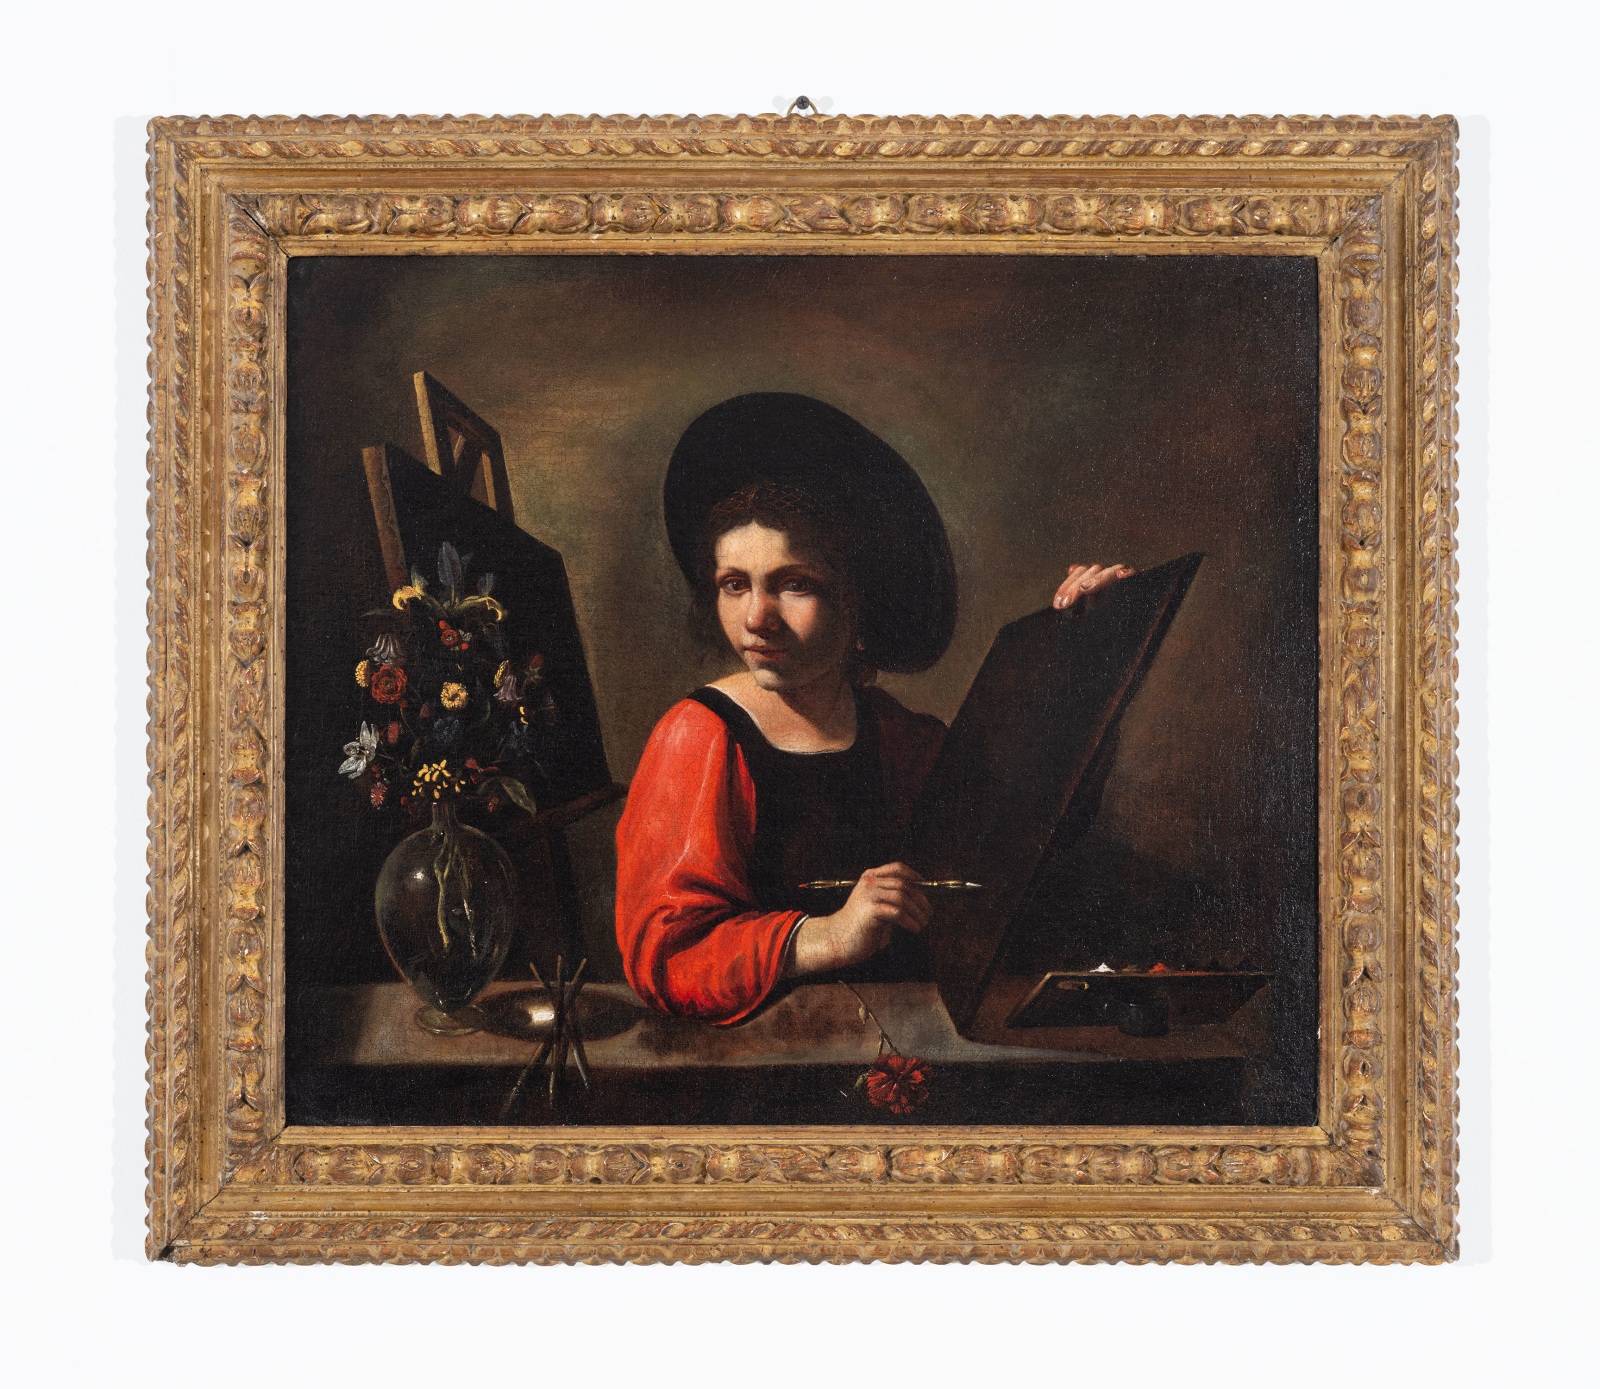 Pietro Paolini (Lucca, 1603 - 1681), Portrait of a female artist